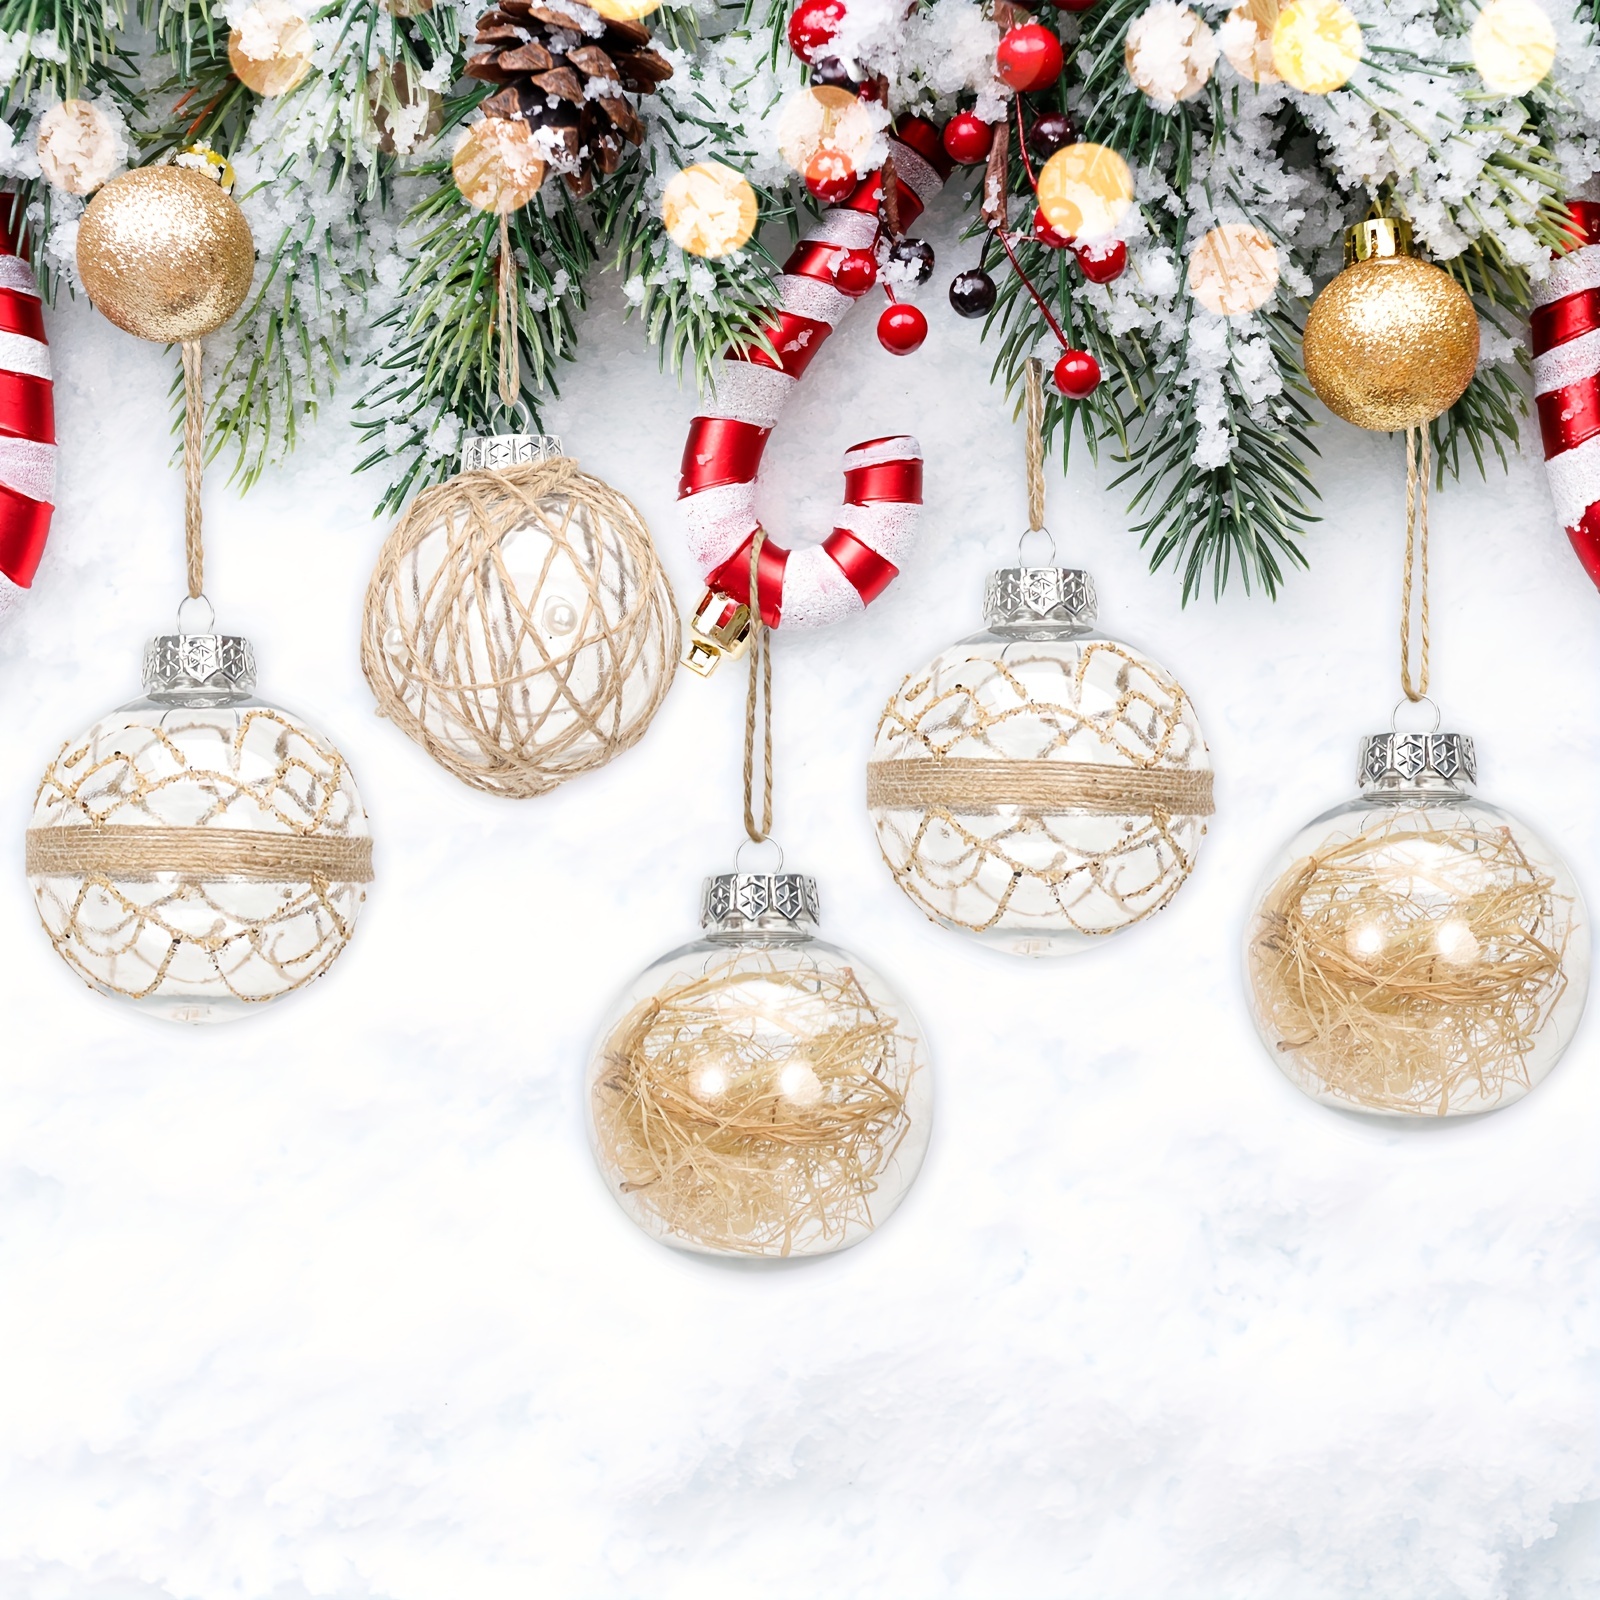 arbol de navidad con esferas grandes, arbol navideño con esferas gigantes   Ideas para arboles de navidad, Arboles de navidad ideas, Decoracion de  arboles